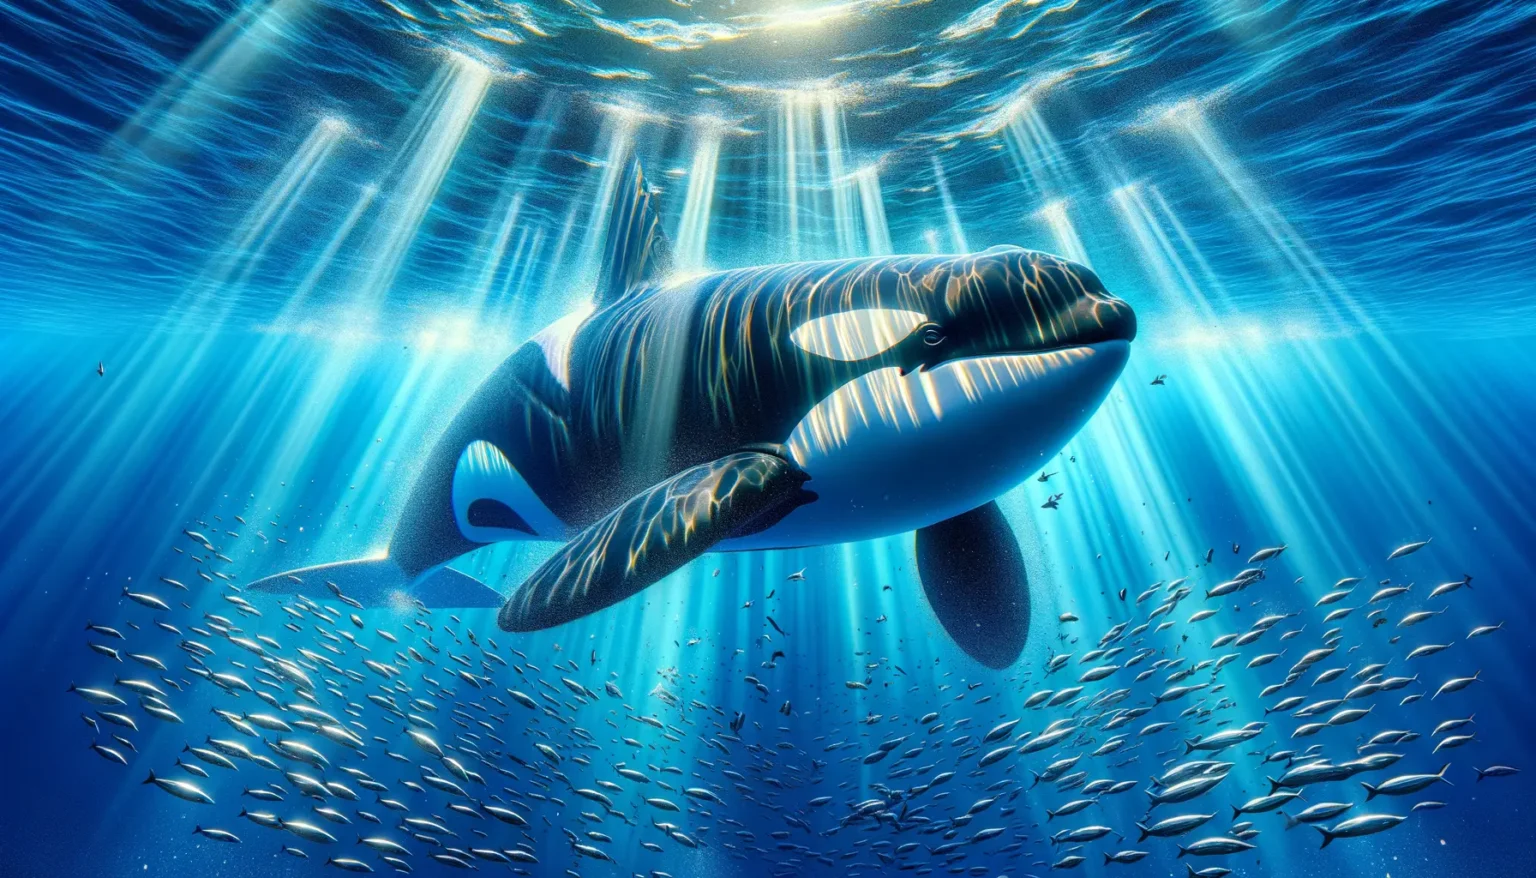 Ein großer Orca schwimmt unter Wasser umgeben von einem Schwarm kleiner Fische, während Sonnenstrahlen durch das blaue Wasser von der Oberfläche herab scheinen.